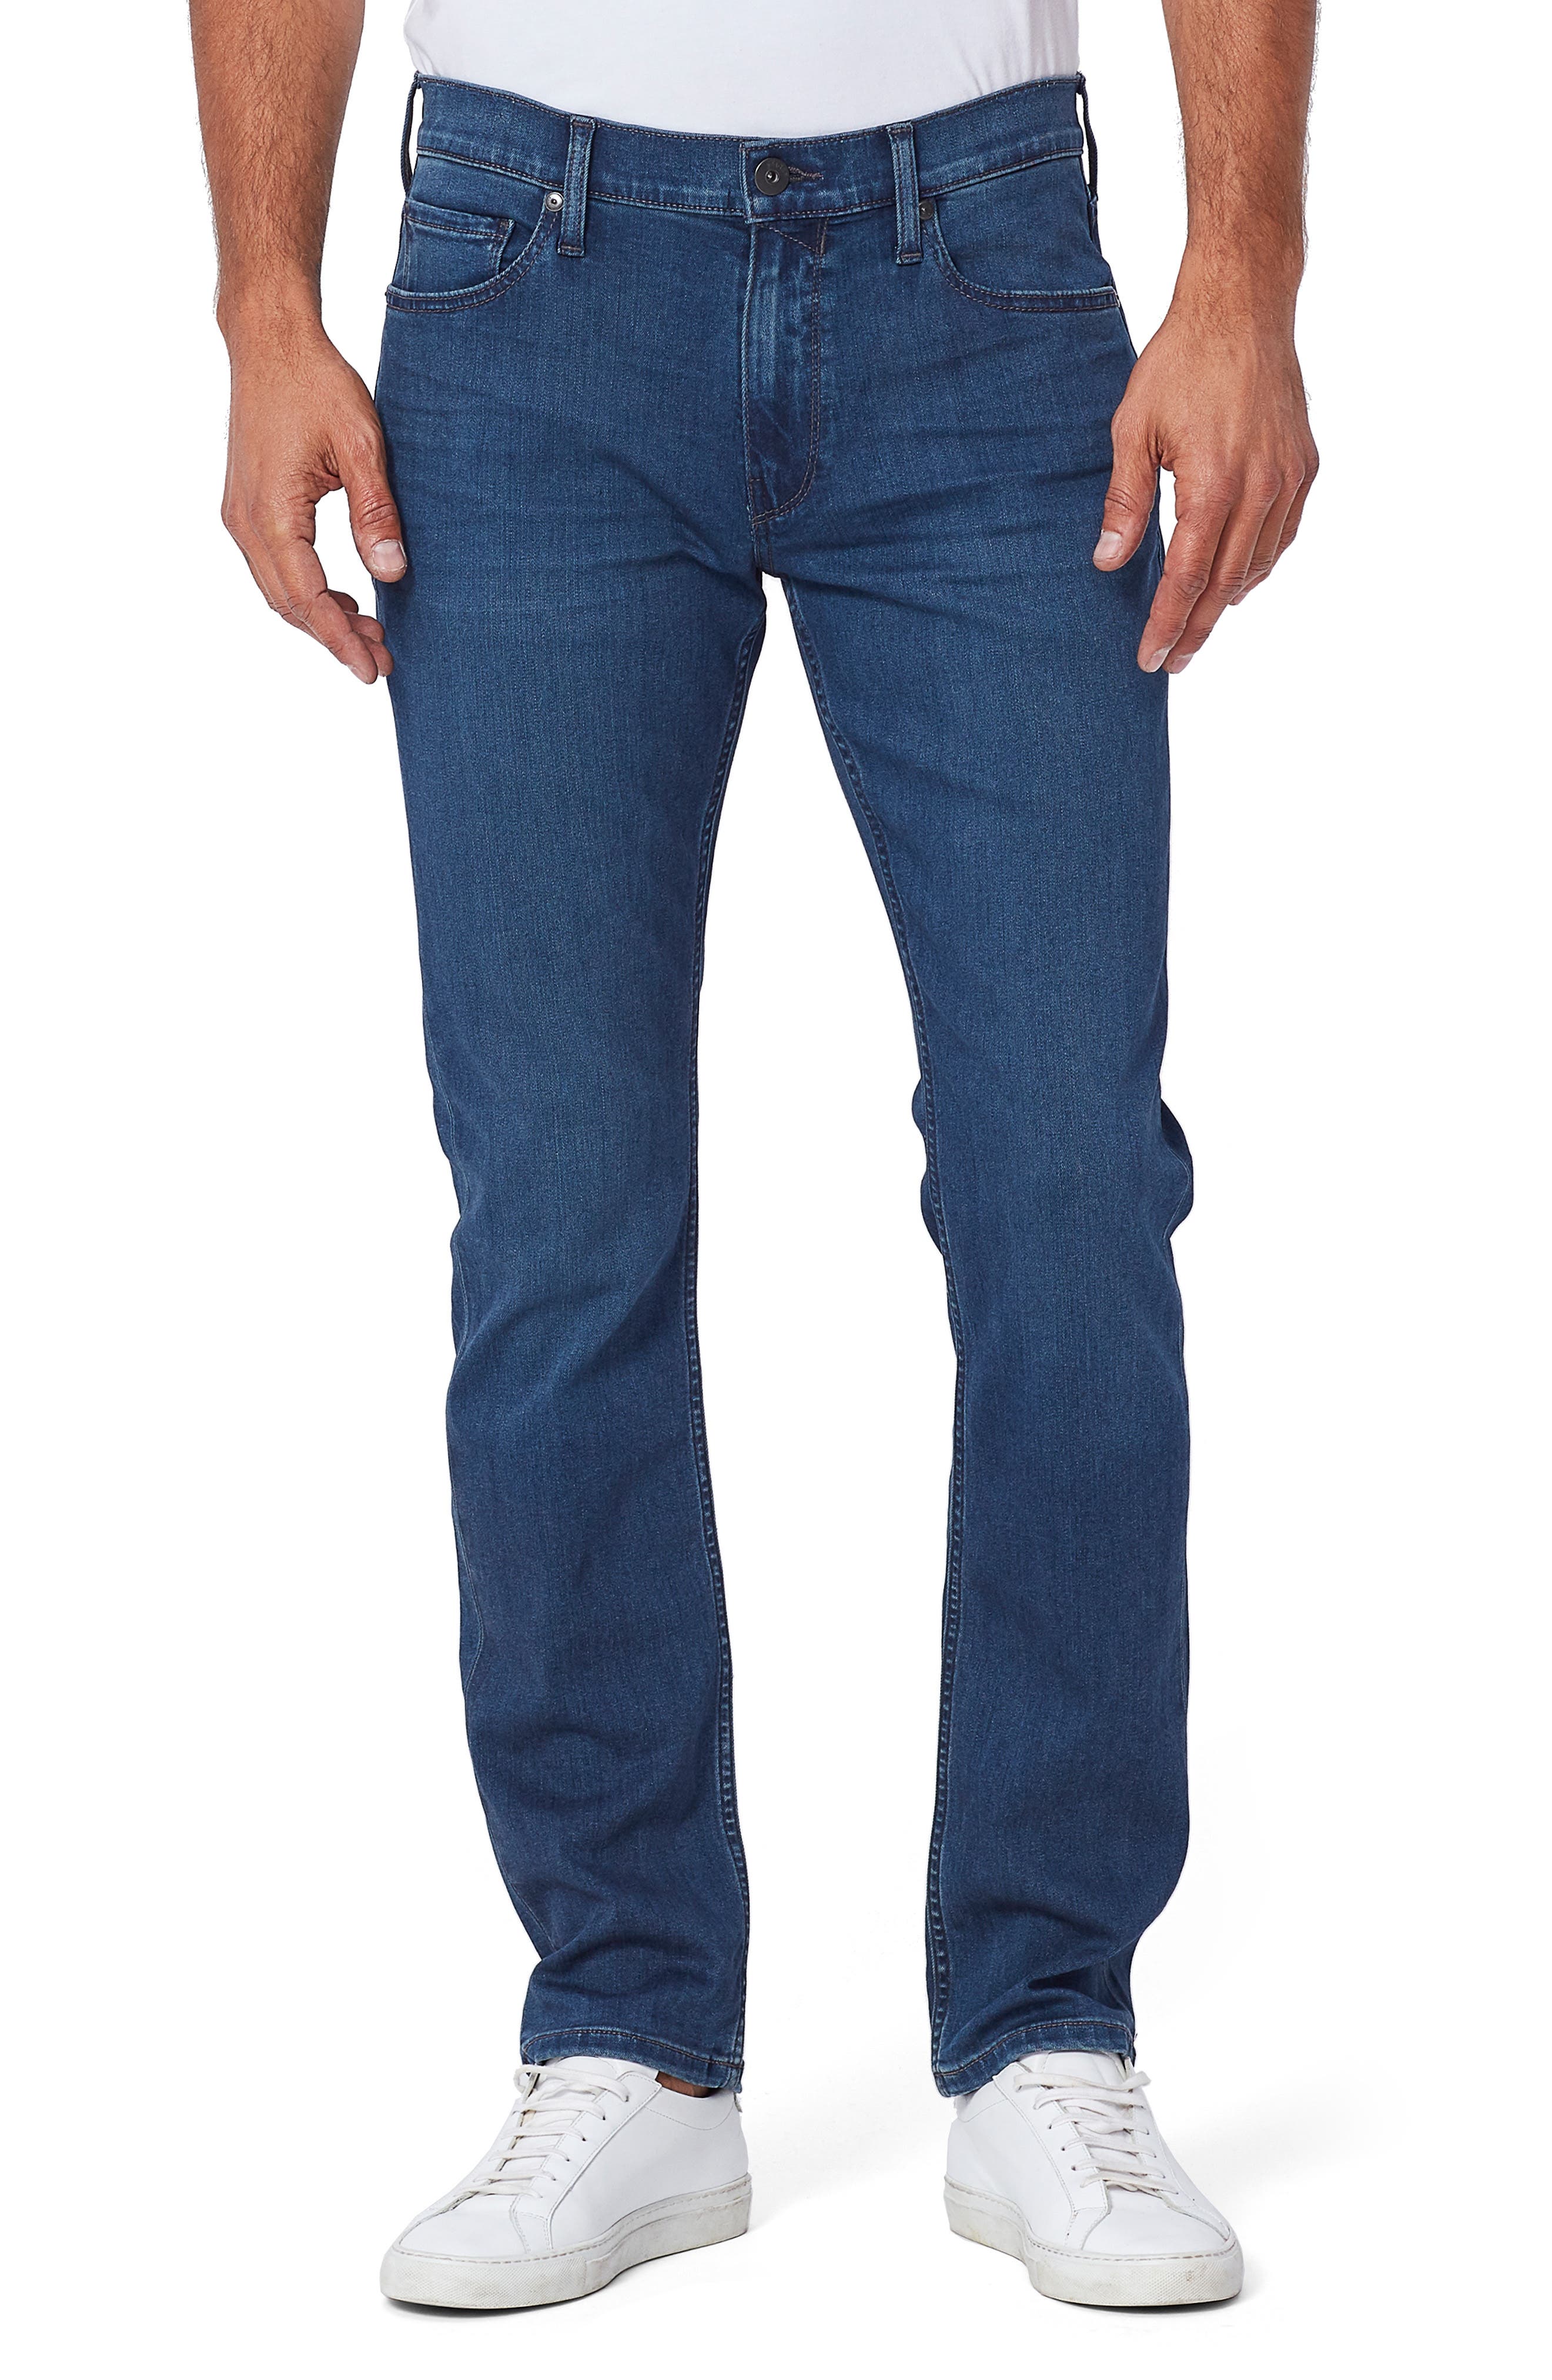 paige jeans size 31